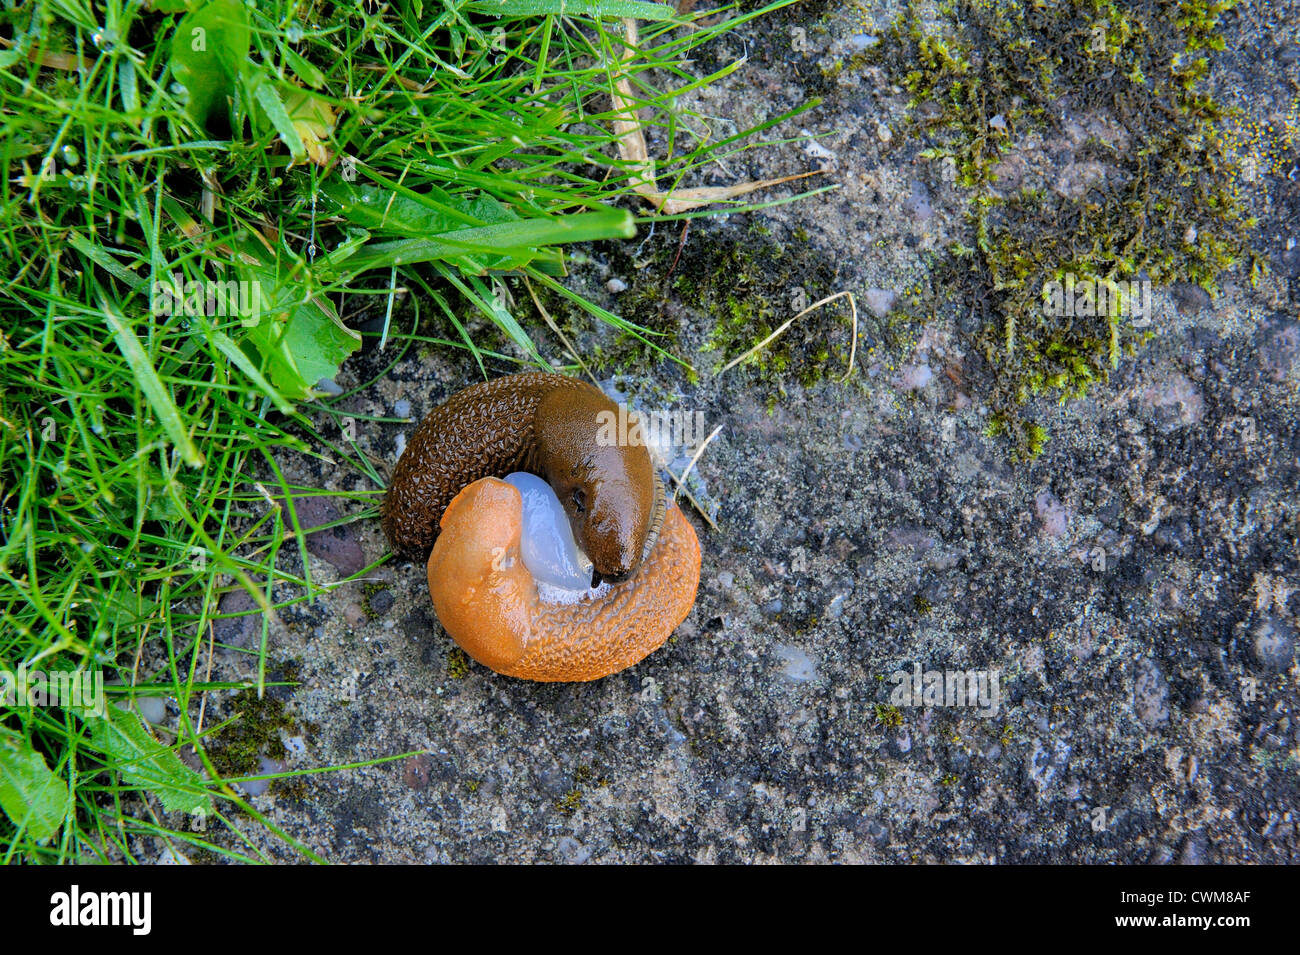 slugs mating england uk Stock Photo